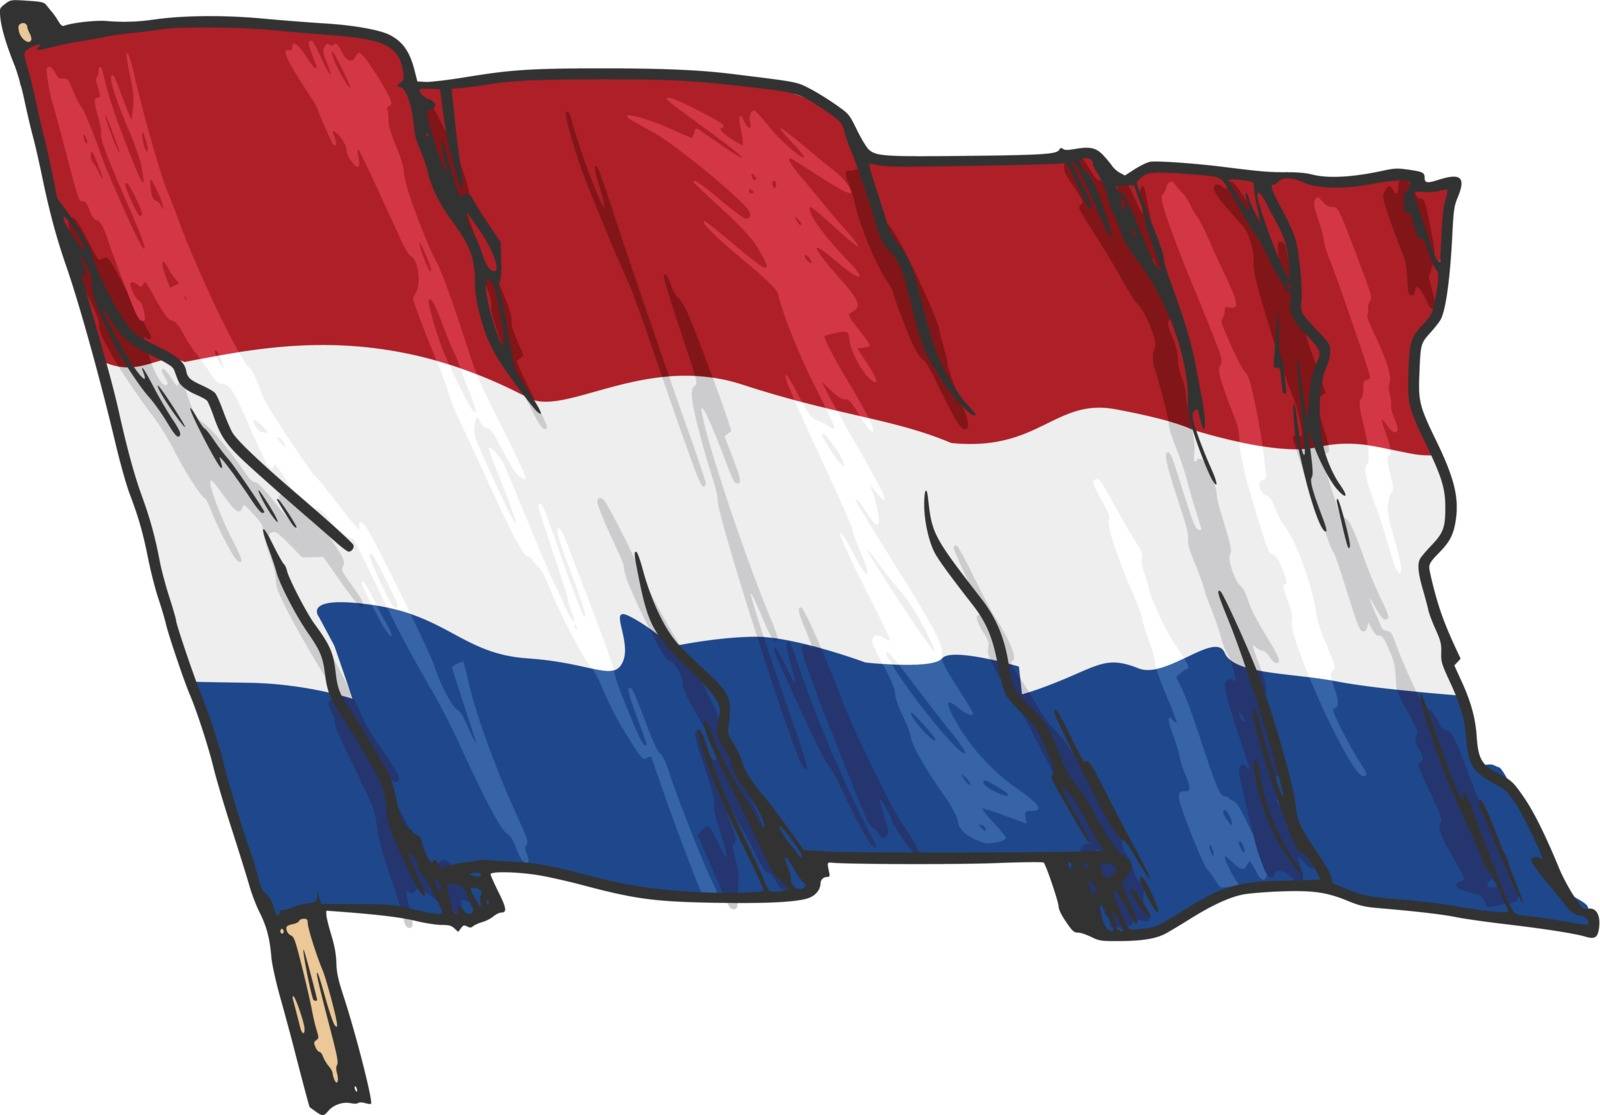 hand drawn, sketch, illustration of flag of Netherlands